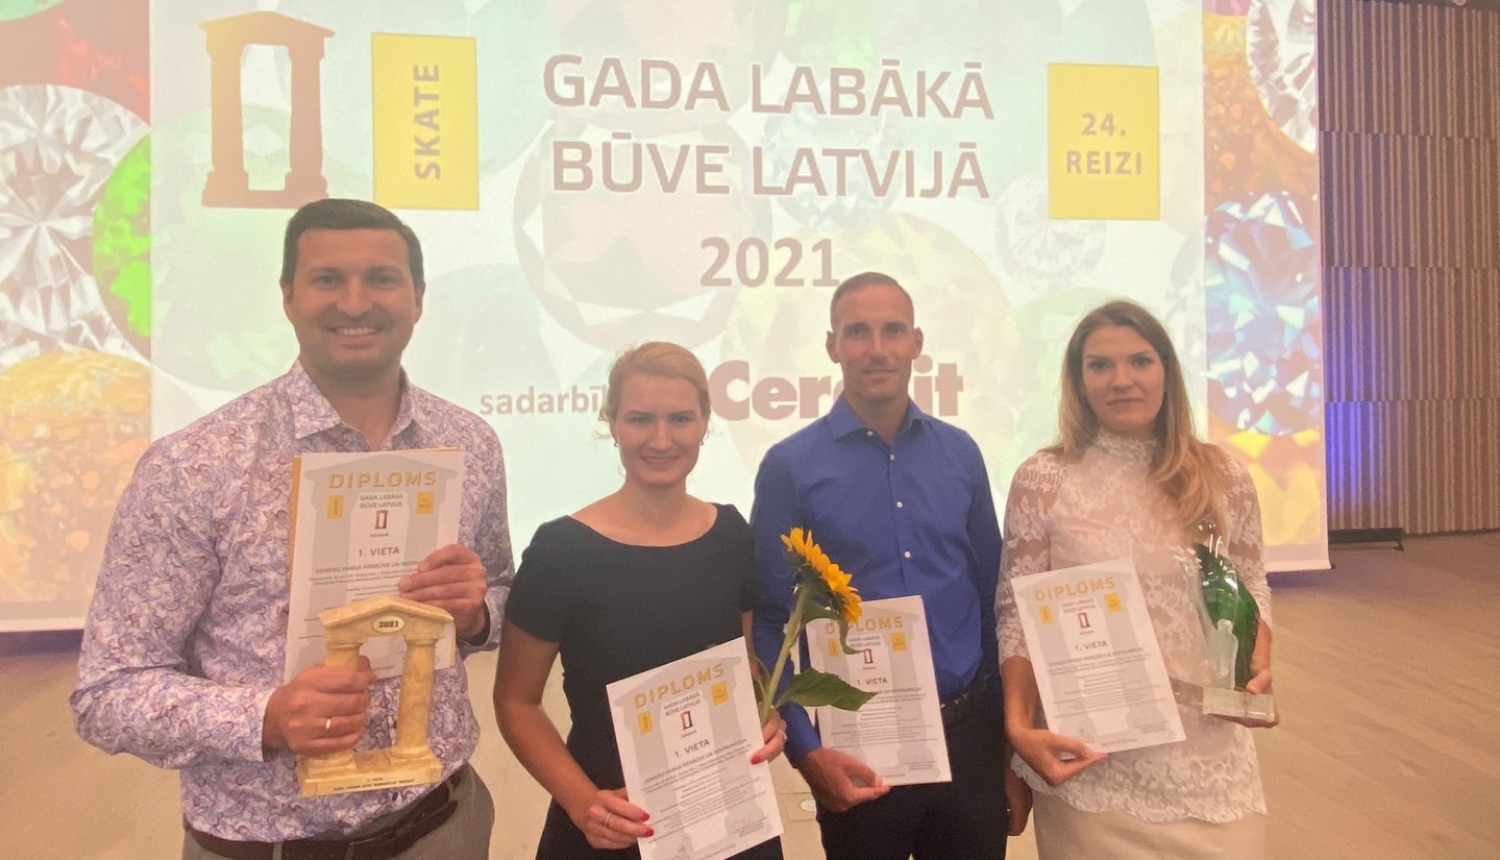 Ķemeru parks iegūst 1.vietu skates Gada labākās būves Latvijā 2021 nominācijā “Ainava”